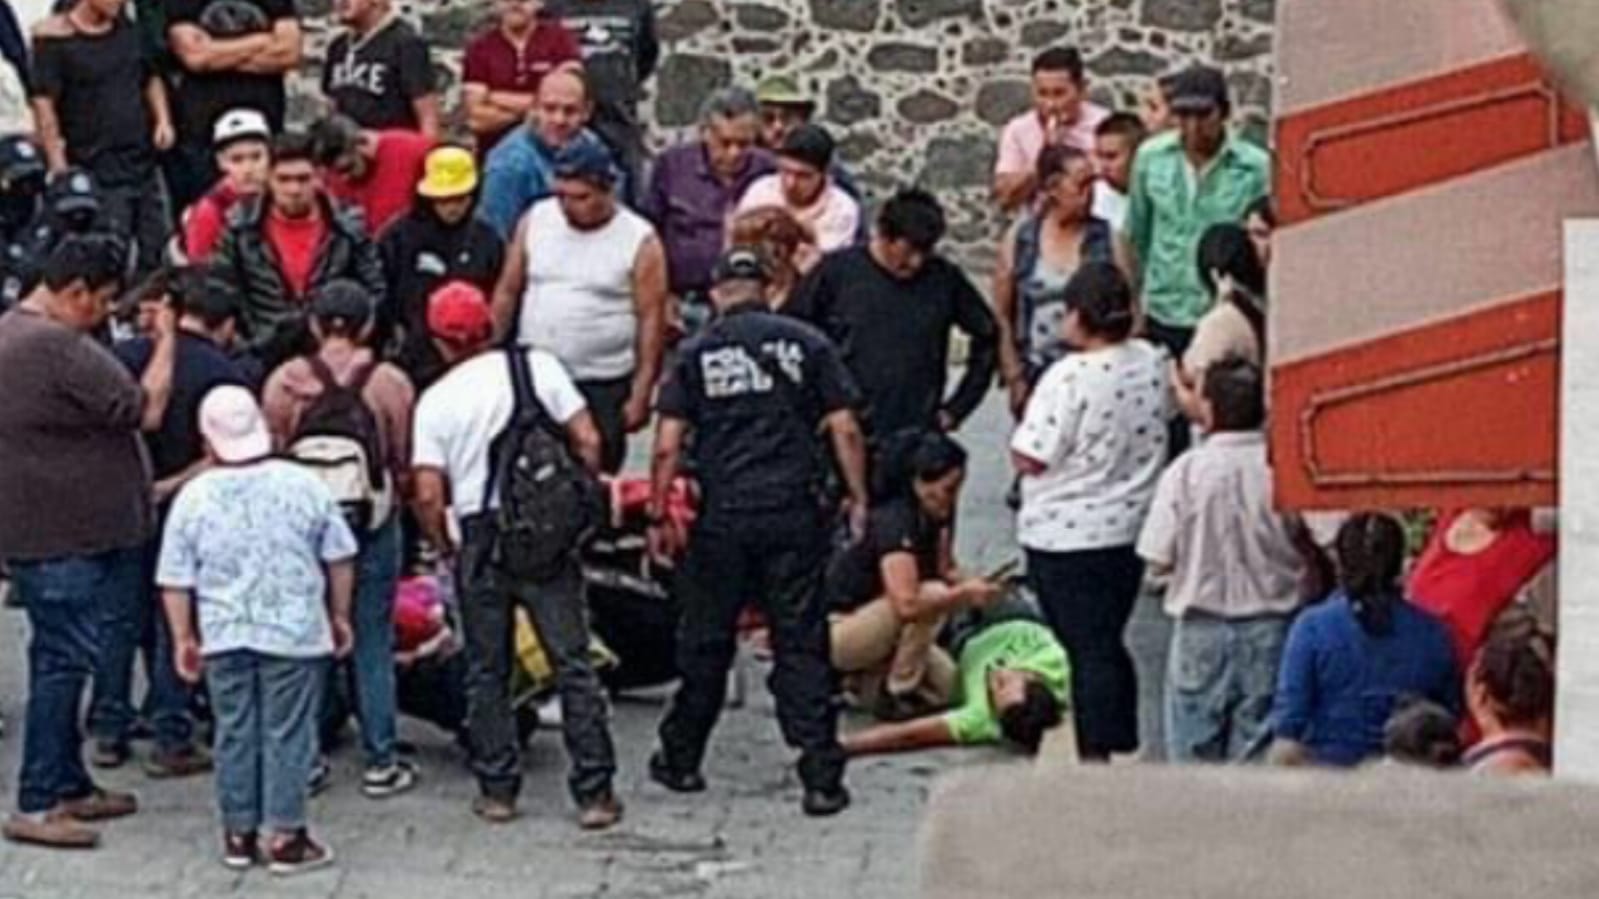 Balacera en Chiconautla en Ecatepec, hay dos heridos. Foto: Cortesía